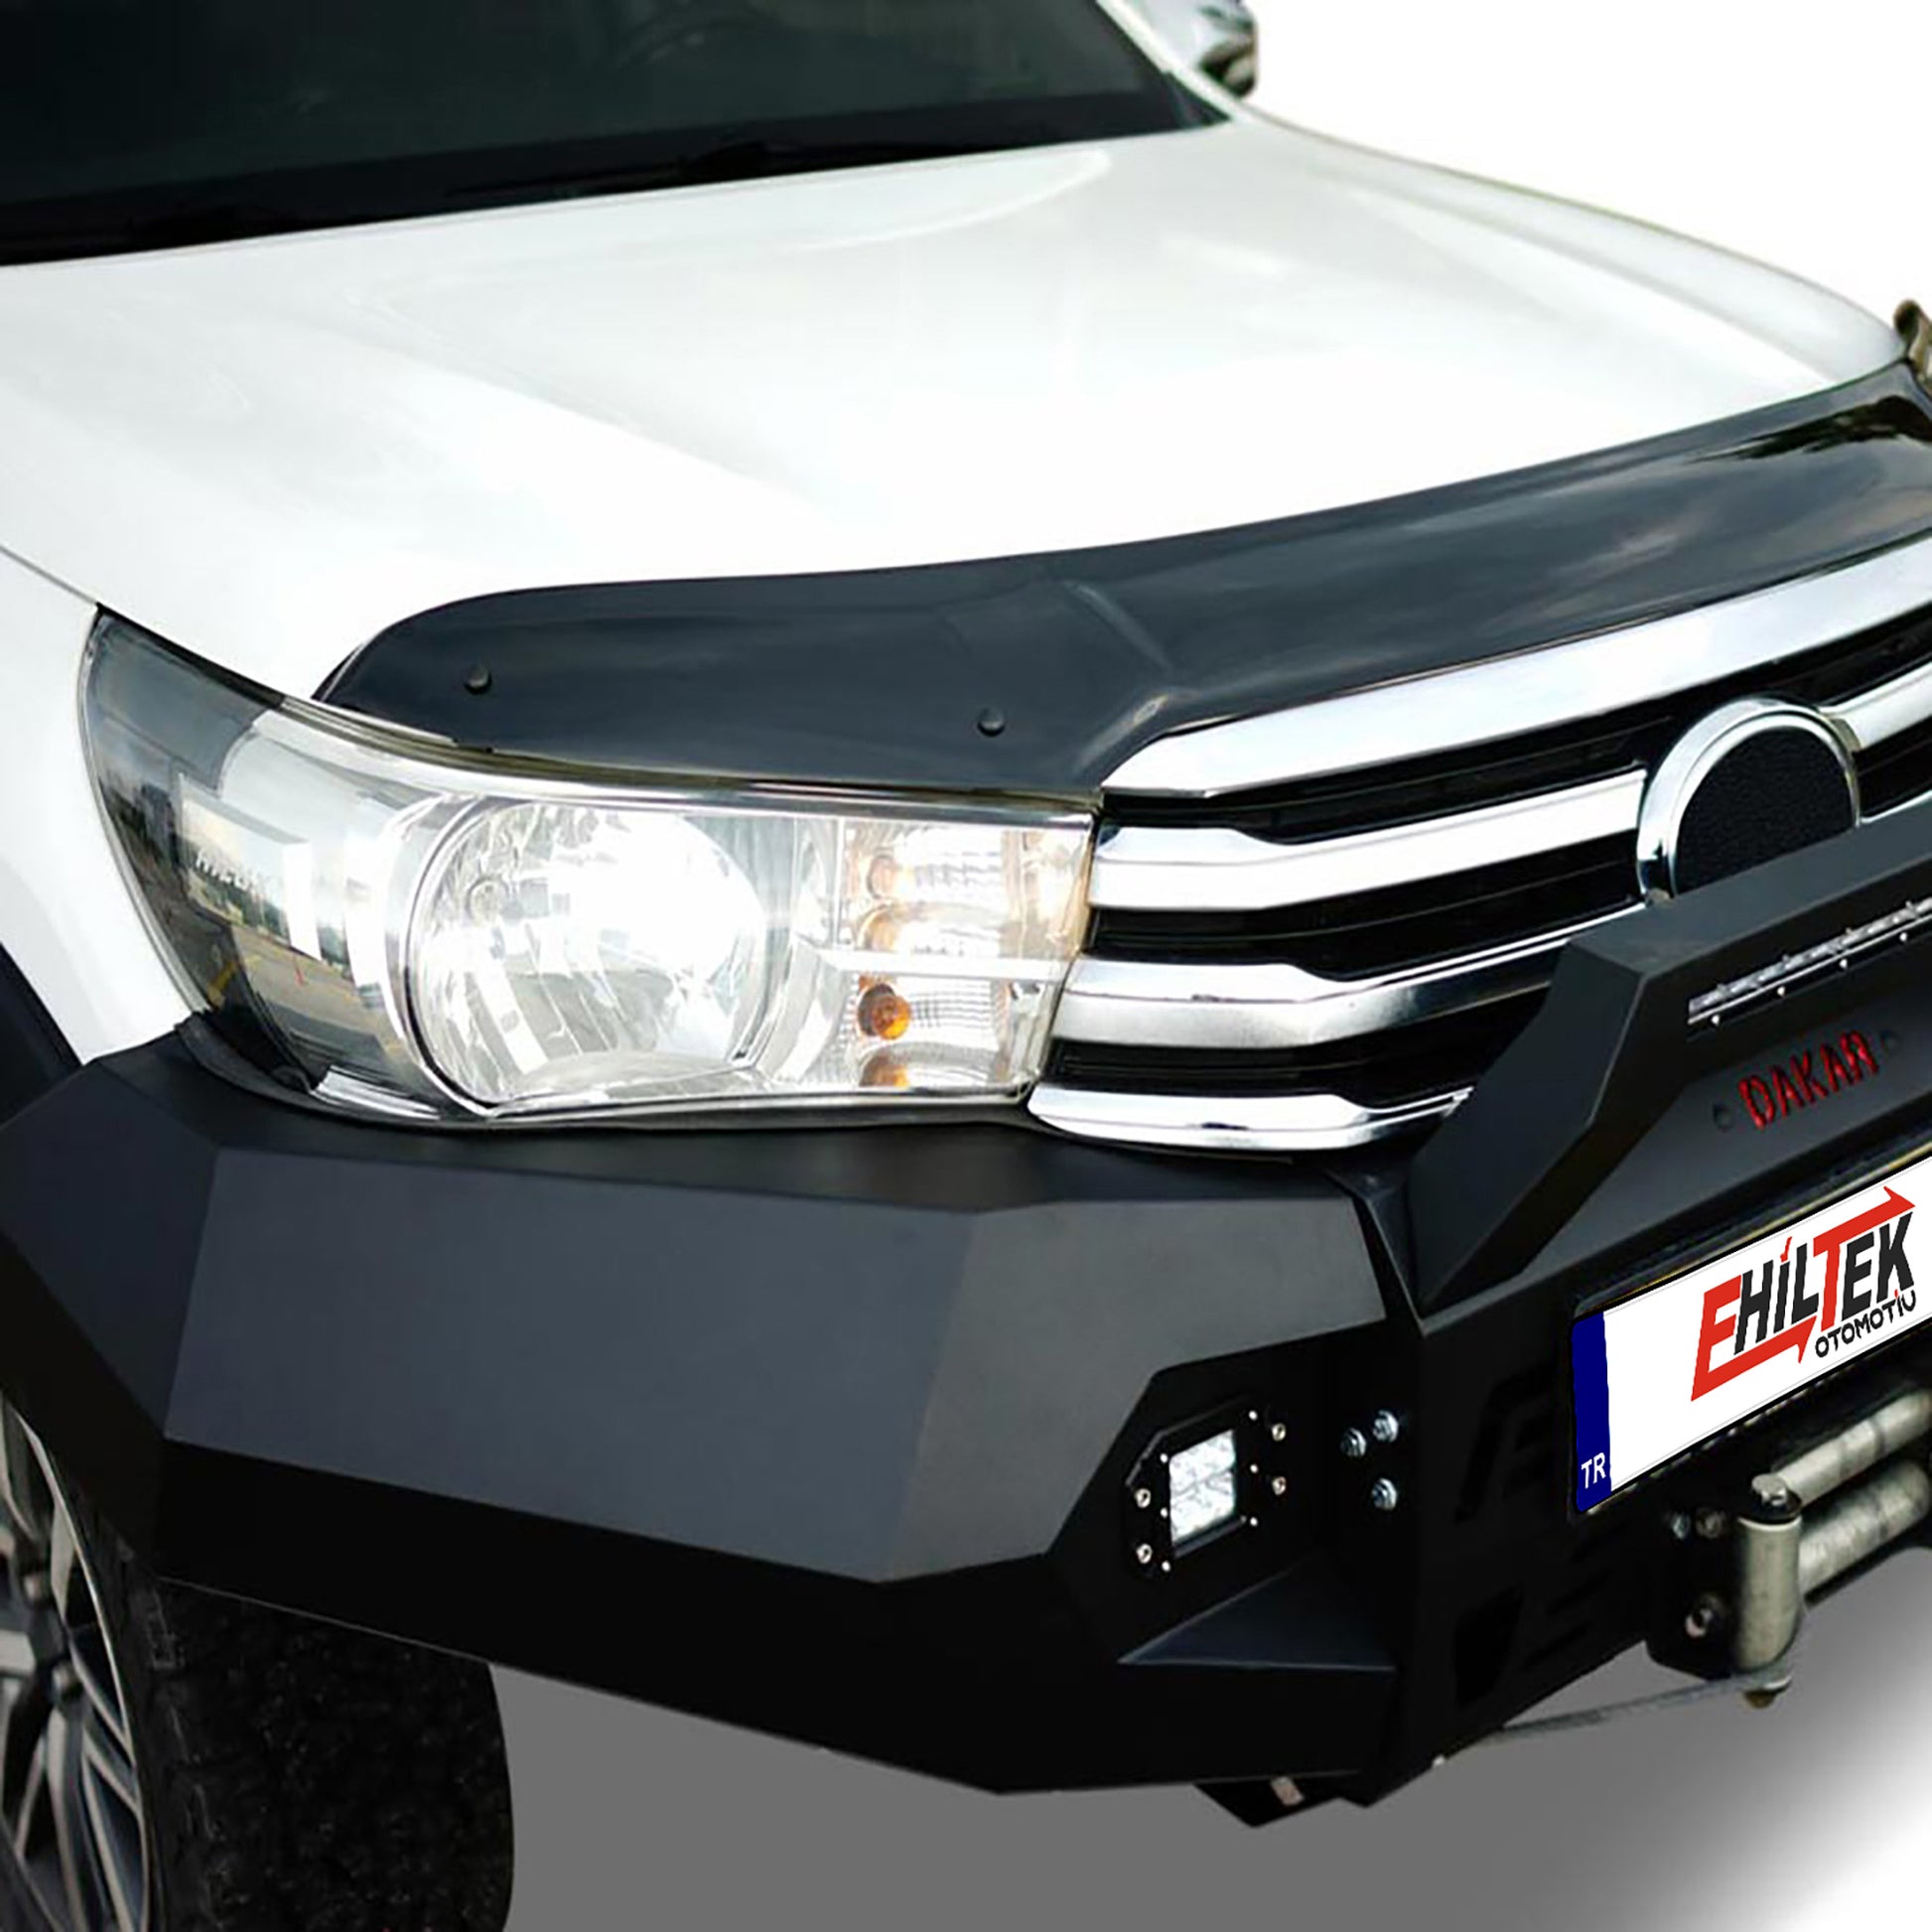 Toyota Hilux Ön Kaput Rüzgarlığı Aksesuarları Detaylı Resimleri, Kampanya bilgileri ve fiyatı - 1